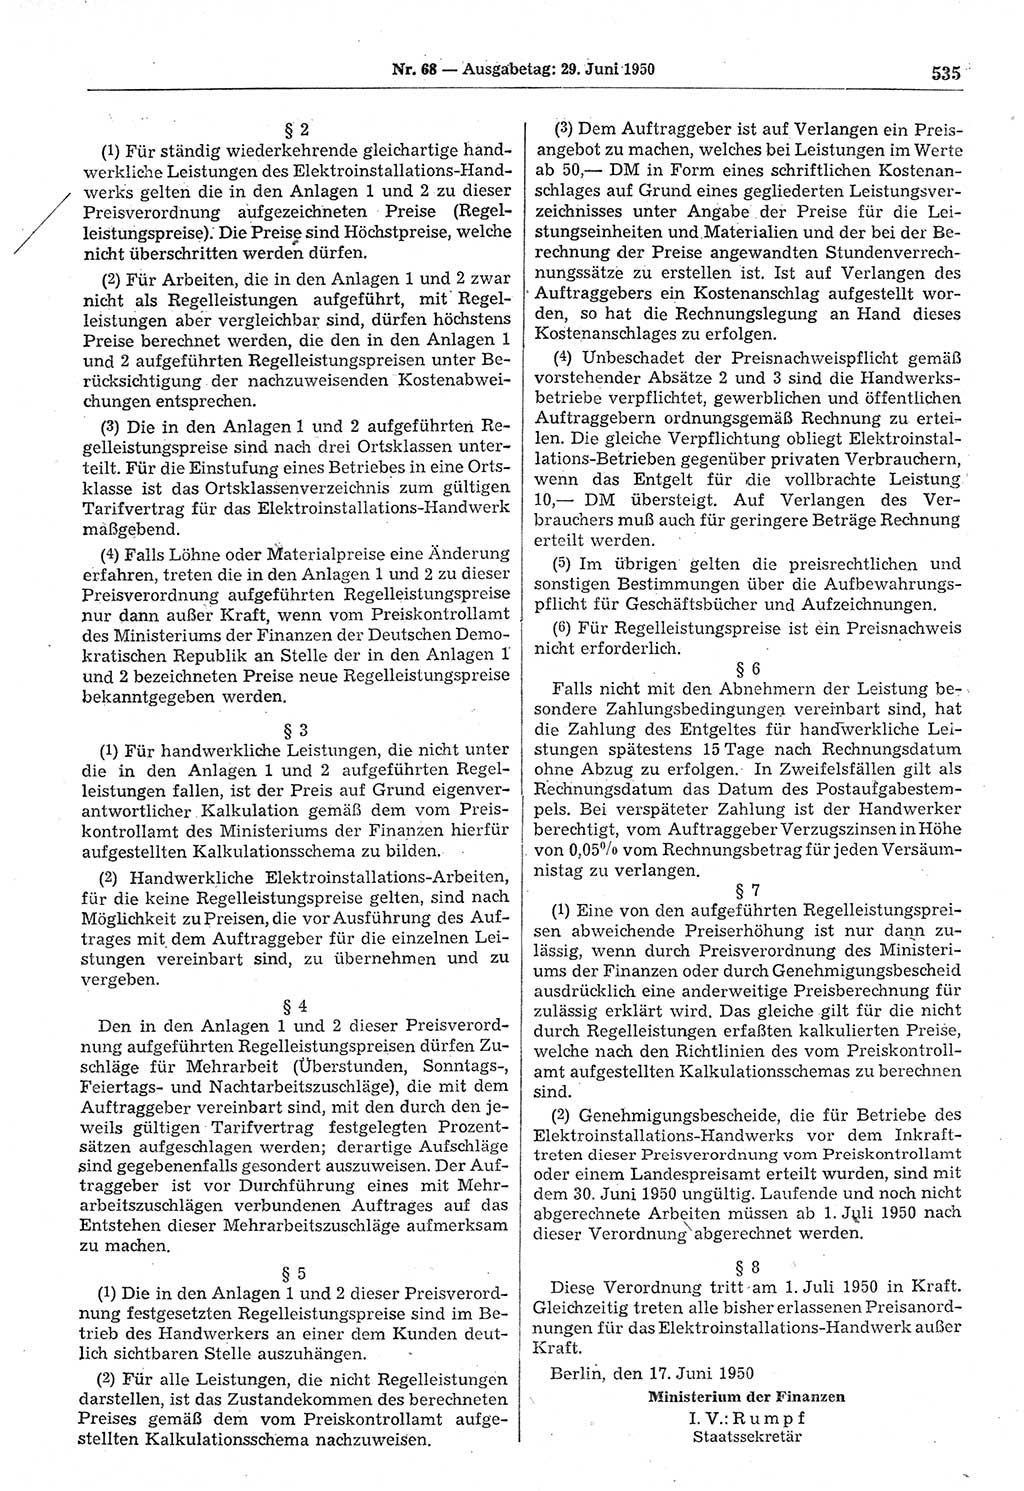 Gesetzblatt (GBl.) der Deutschen Demokratischen Republik (DDR) 1950, Seite 535 (GBl. DDR 1950, S. 535)